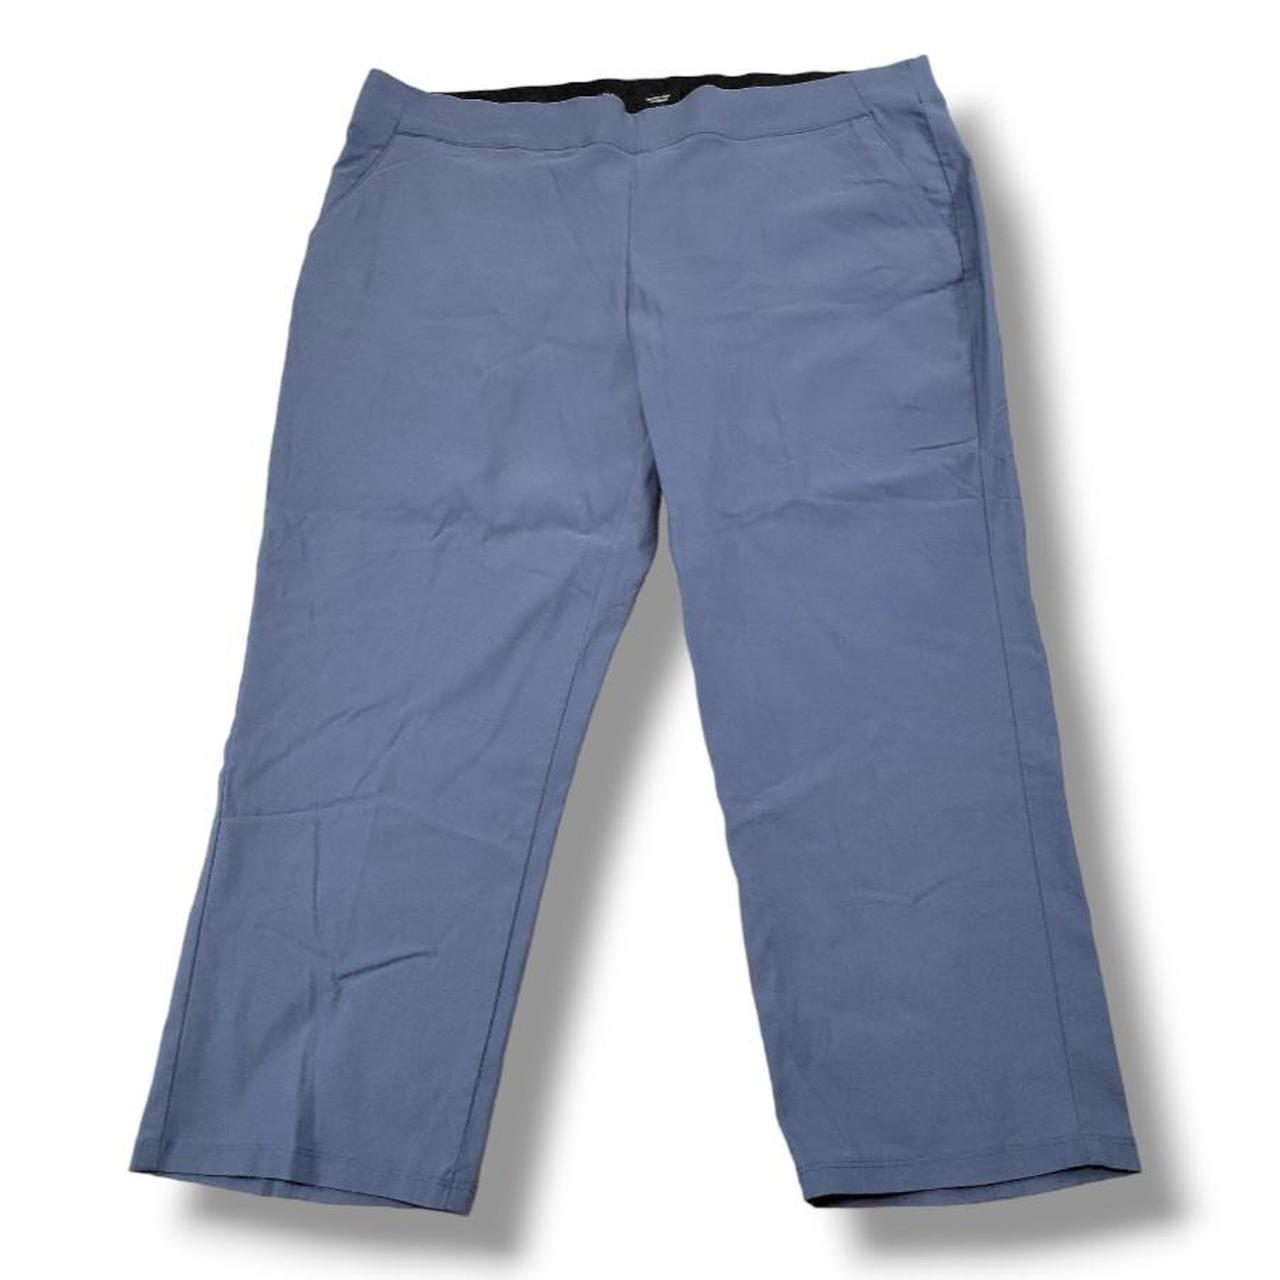 Simply Vera Vera Wang Polka Dots Navy Blue Casual Pants Size XL - 53% off